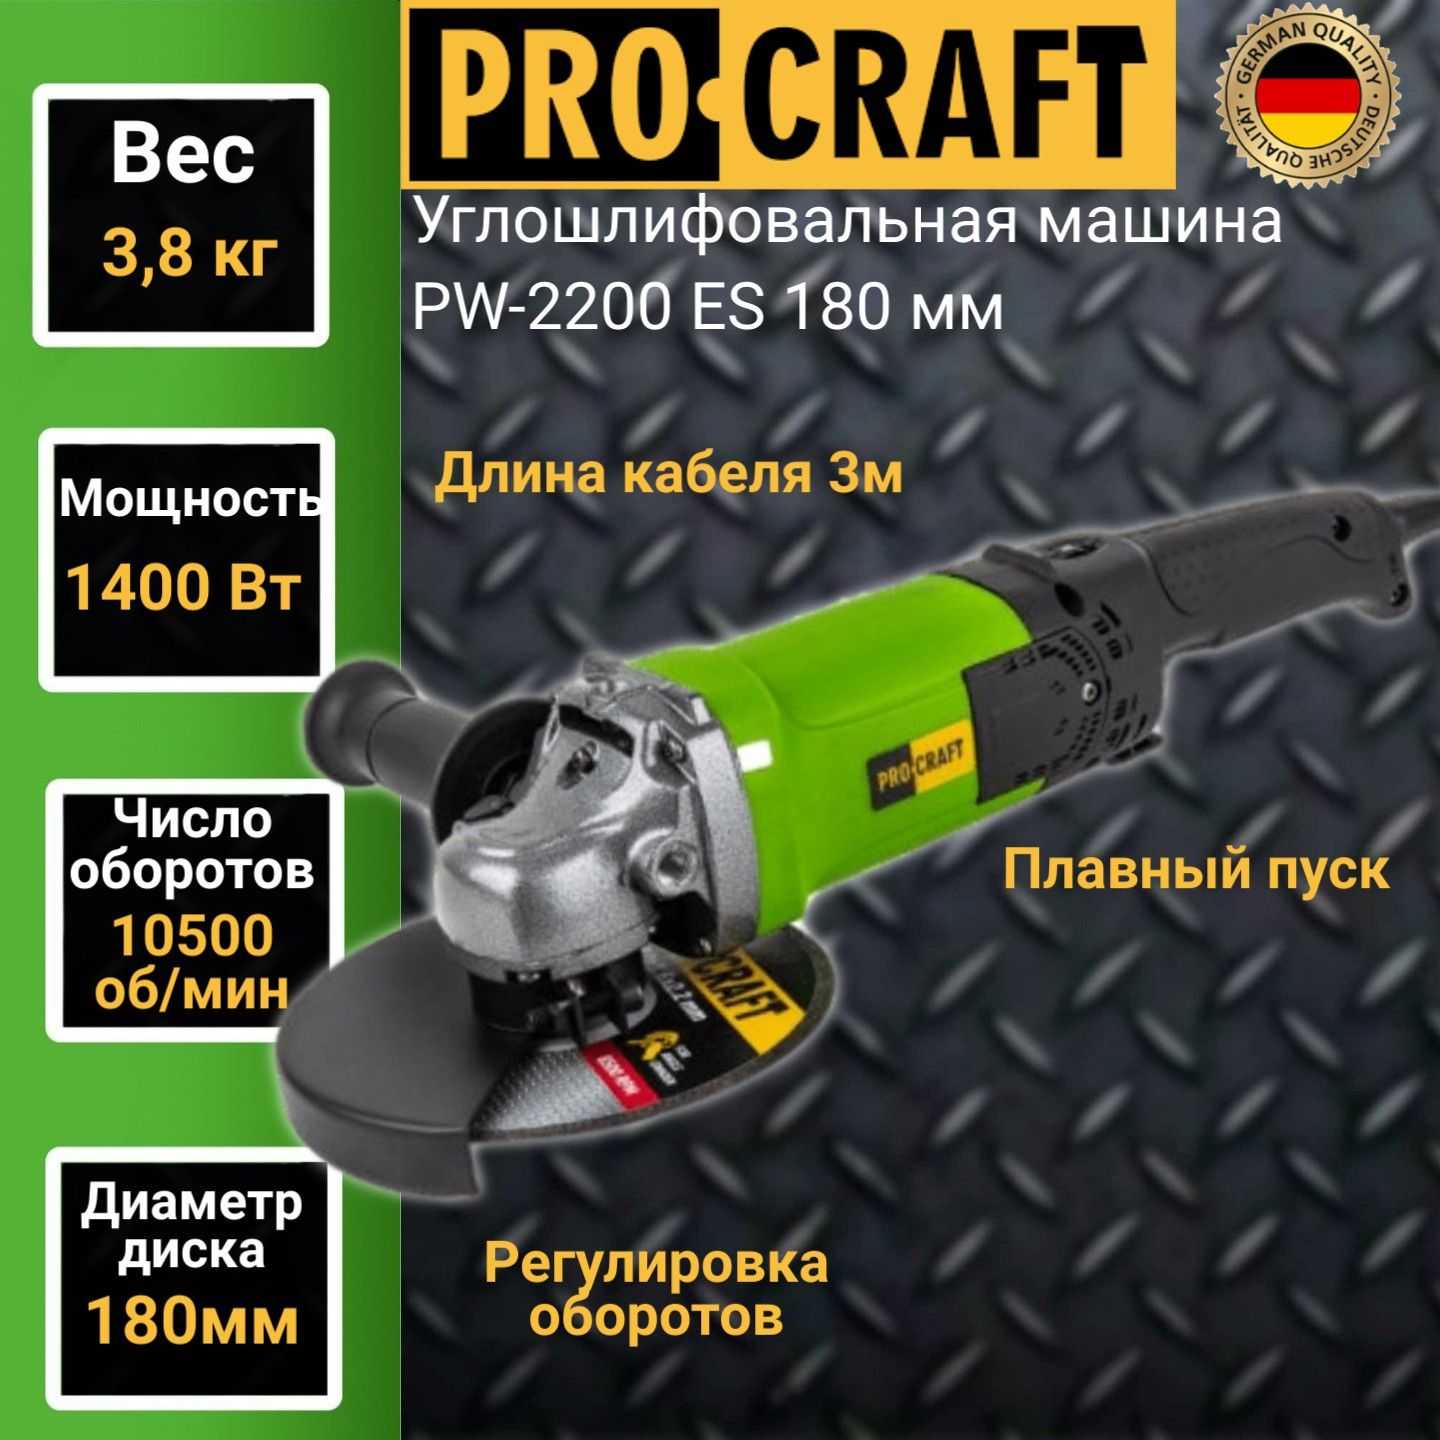 Углошлифовальная машина болгарка Procraft PW-2200ЕS, 180мм круг, 1400Вт, 10500об/мин болгарка ушм deprag